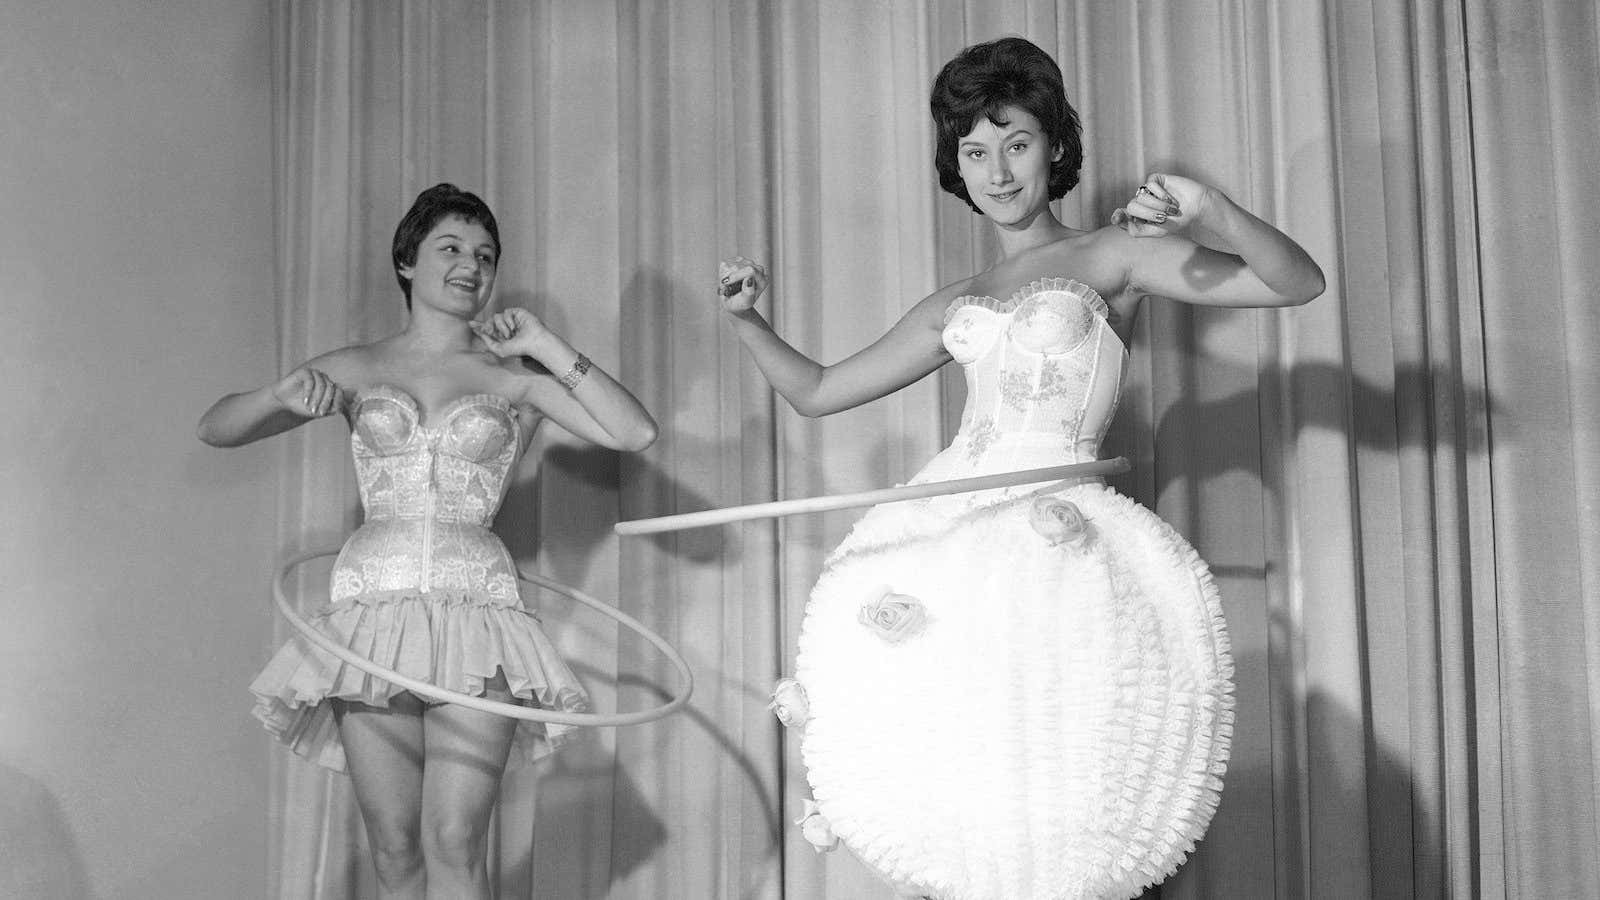 A West German fashion show, 1958.